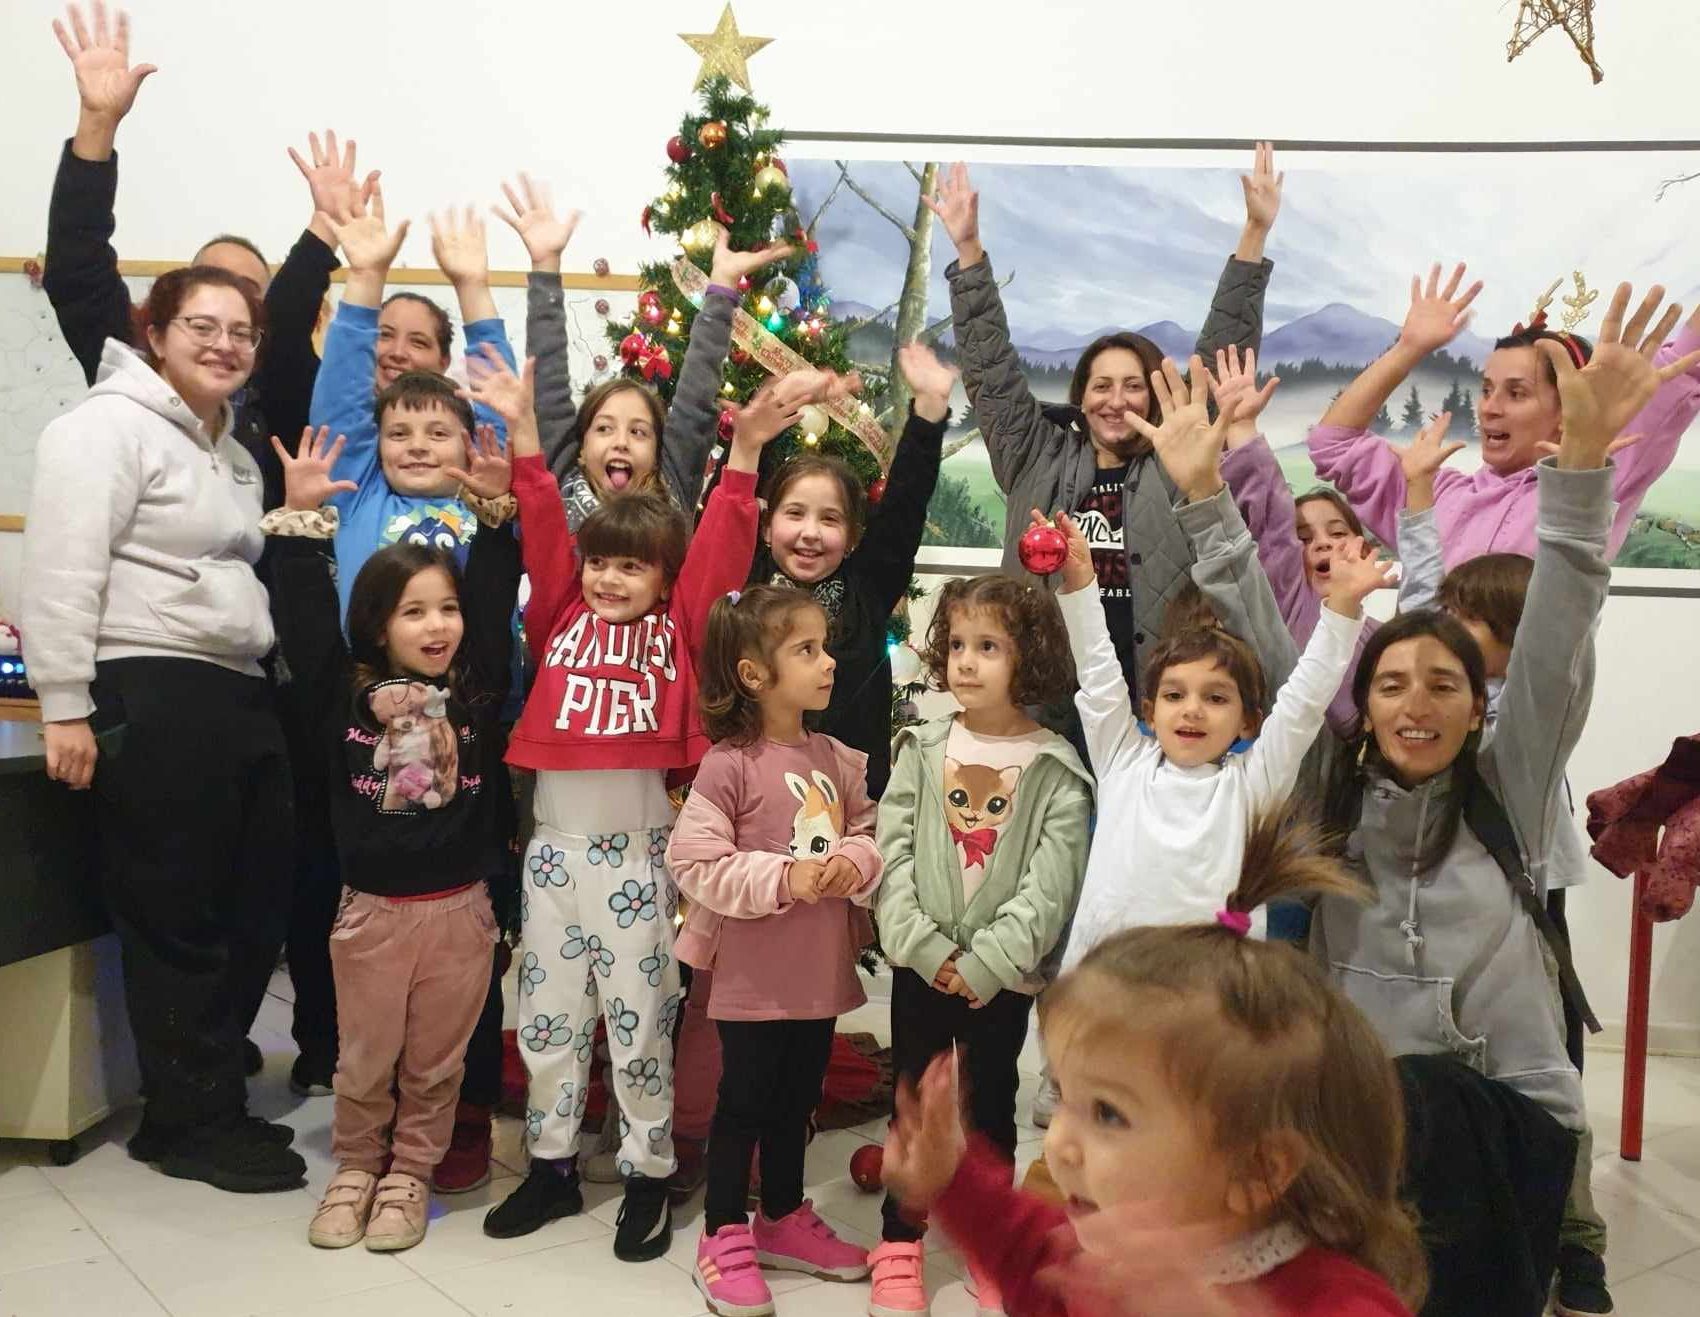 Μήνυμα ελπίδας! Μαθητές στην Εύβοια στόλισαν το Χριστουγεννιάτικο δέντρο της προέδρου (εικόνες)